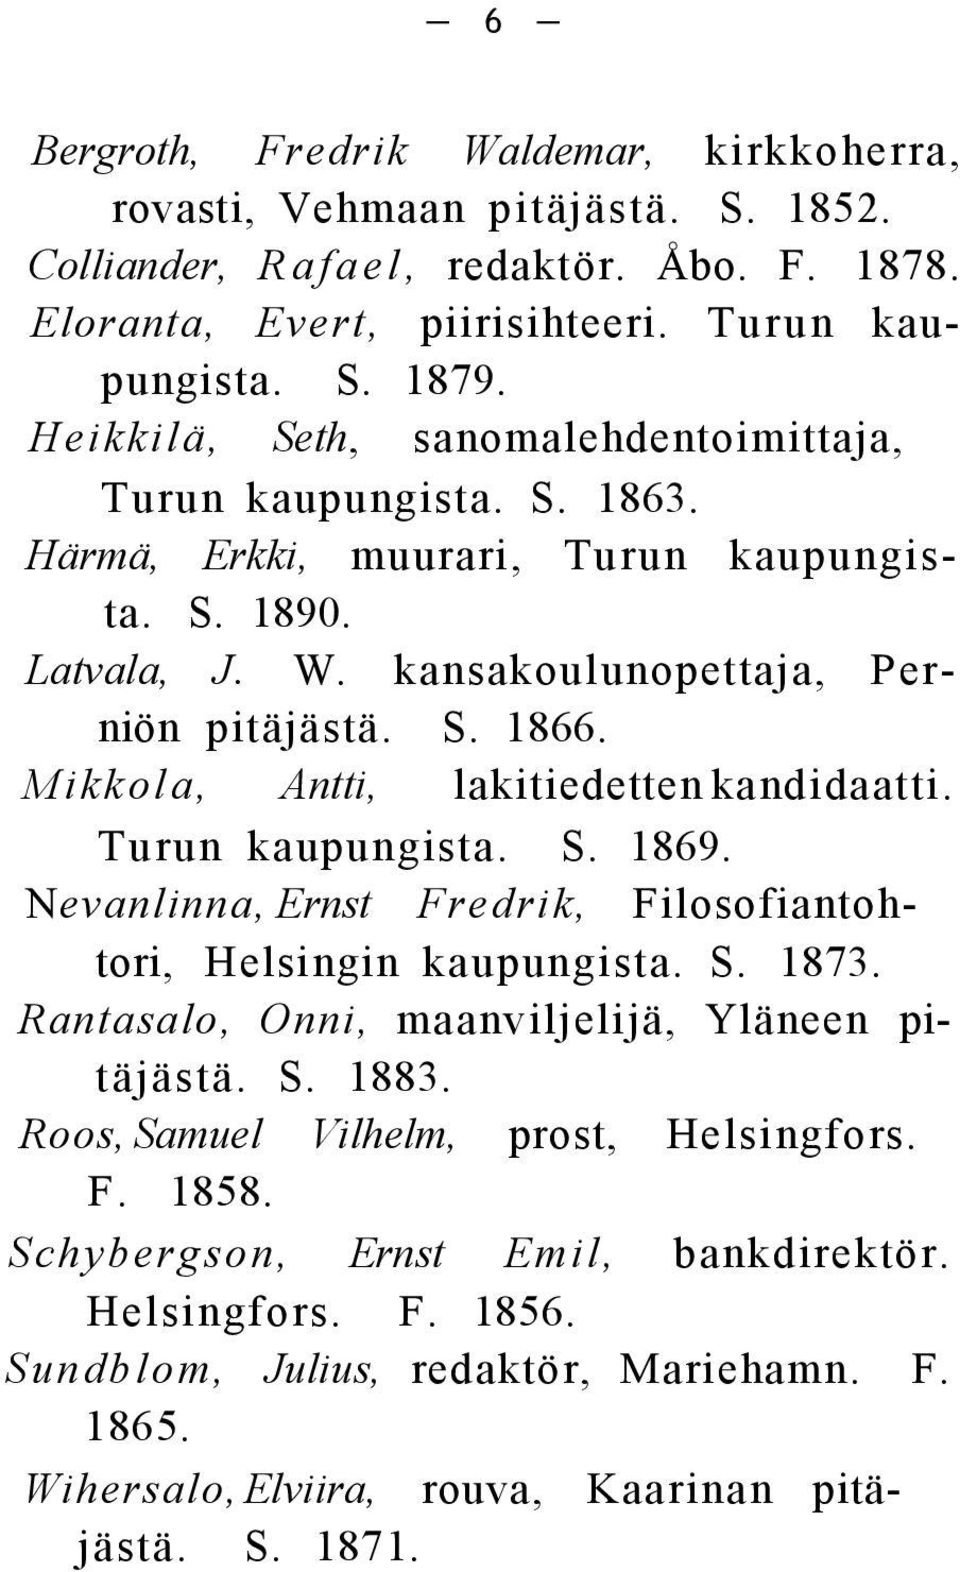 Mikkola, Antti, lakitiedetten kandidaatti. Turun kaupungista. S. 1869. Nevanlinna, Ernst Fredrik, Filosofiantohtori, Helsingin kaupungista. S. 1873.